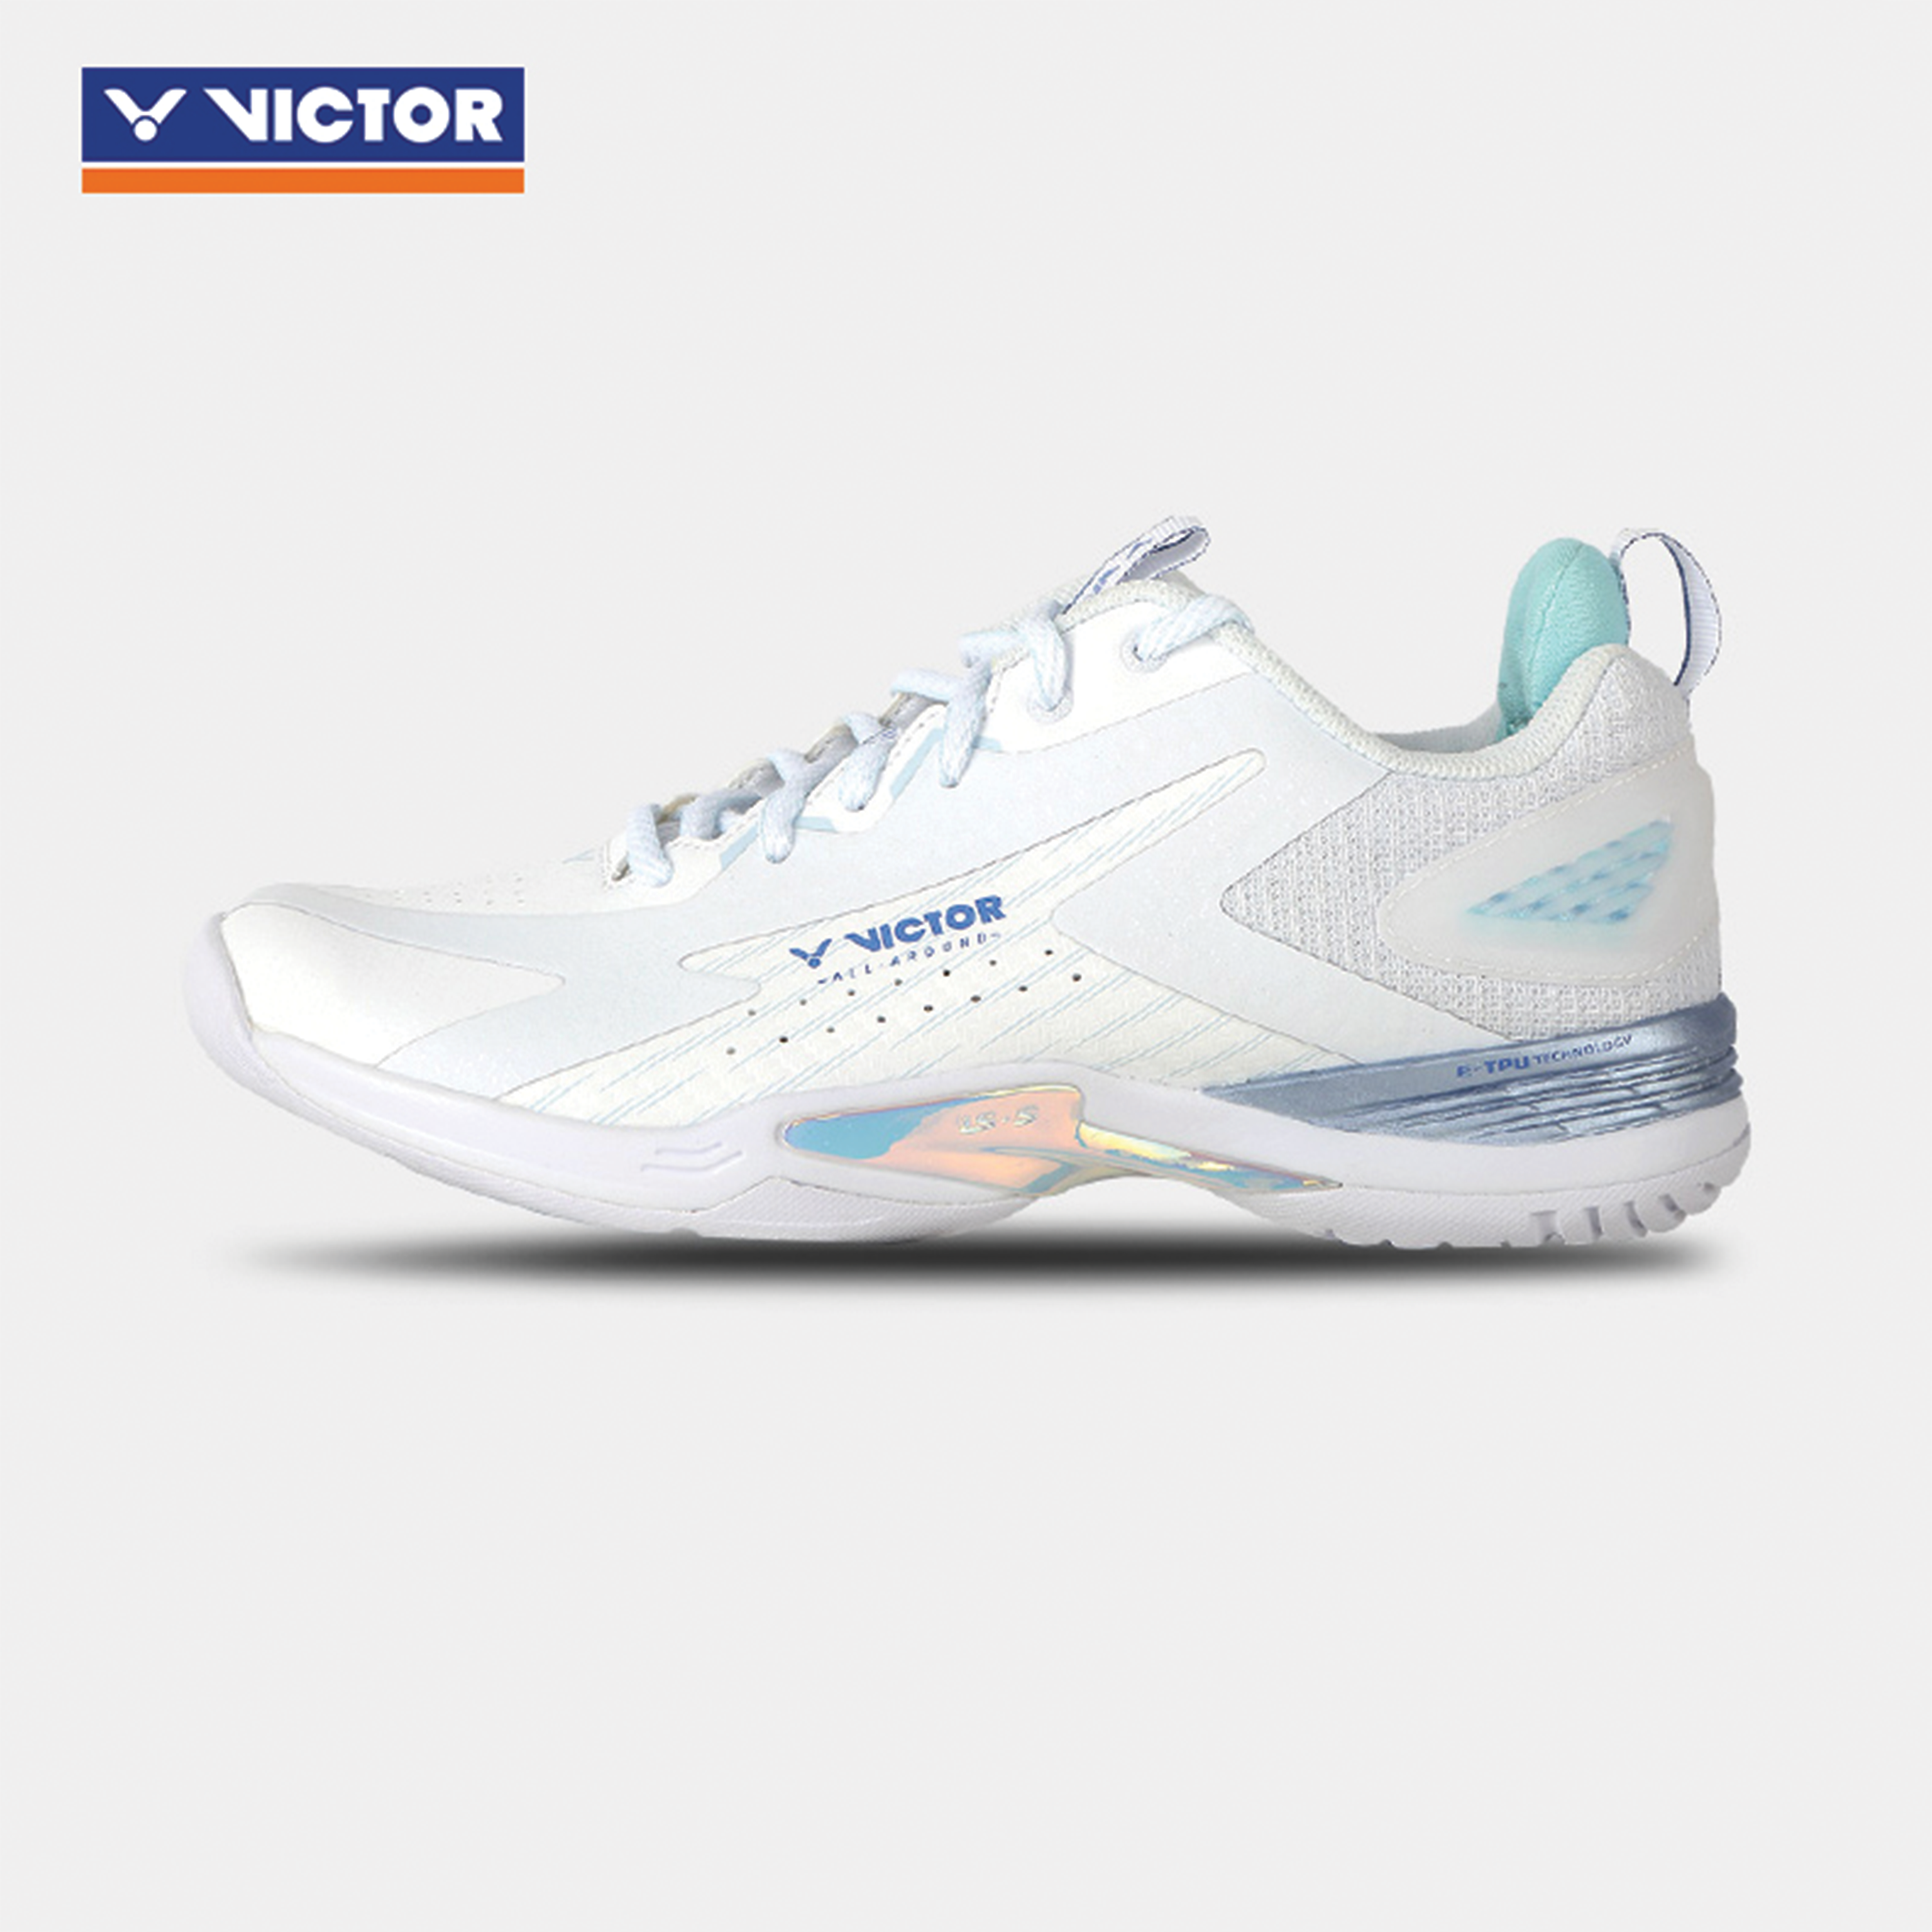 Victor A970NitroLite A Badminton Shoes White MEN'S